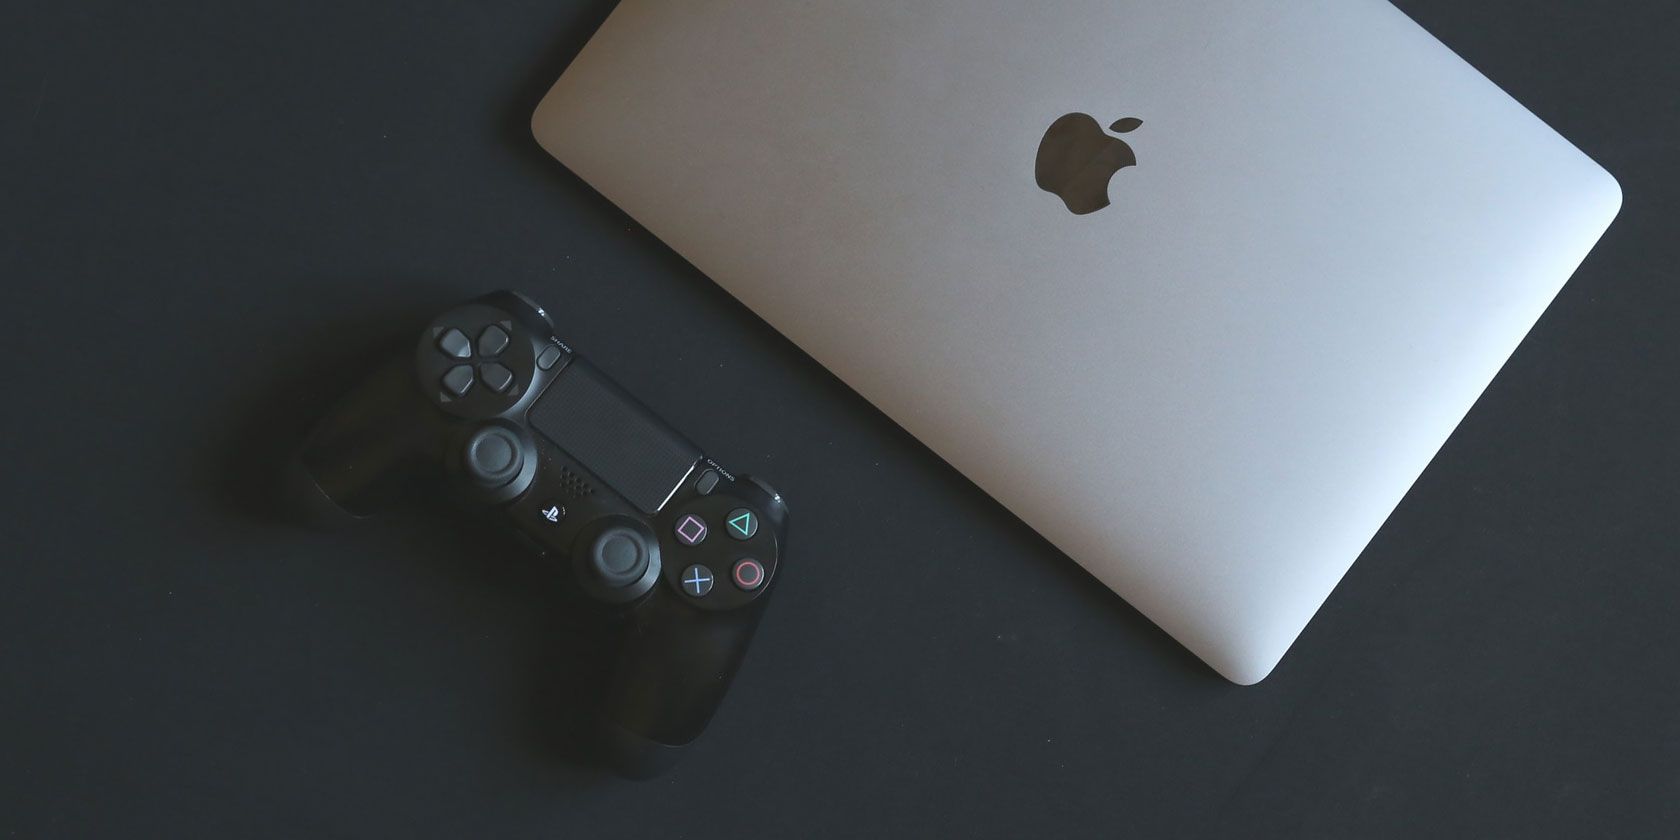 macbook good for gaming